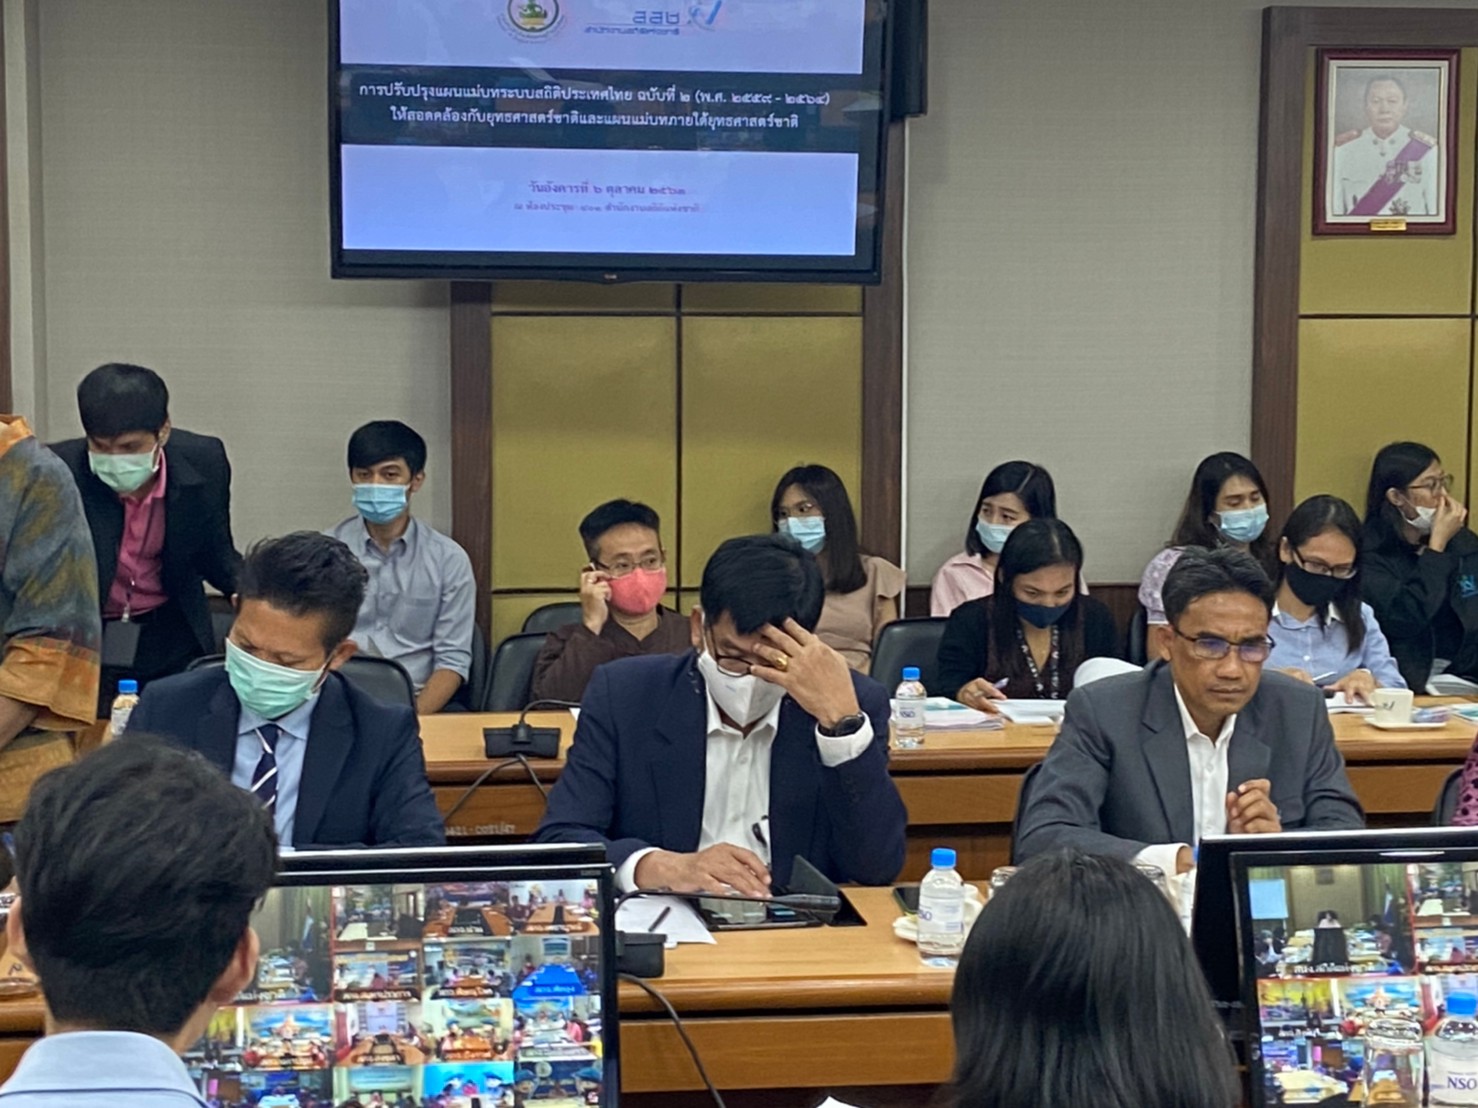 การประชุมรับฟังความคิดเห็น “การปรับปรุงแผนแม่บทระบบสถิติประเทศไทย ฉบับที่ 2 (พ.ศ. 2559 - 2564) ให้สอดคล้องกับยุทธศาสตร์ชาติและแผนแม่บทภายใต้ยุทธศาสตร์ชาติ” ครั้งที่ 2​